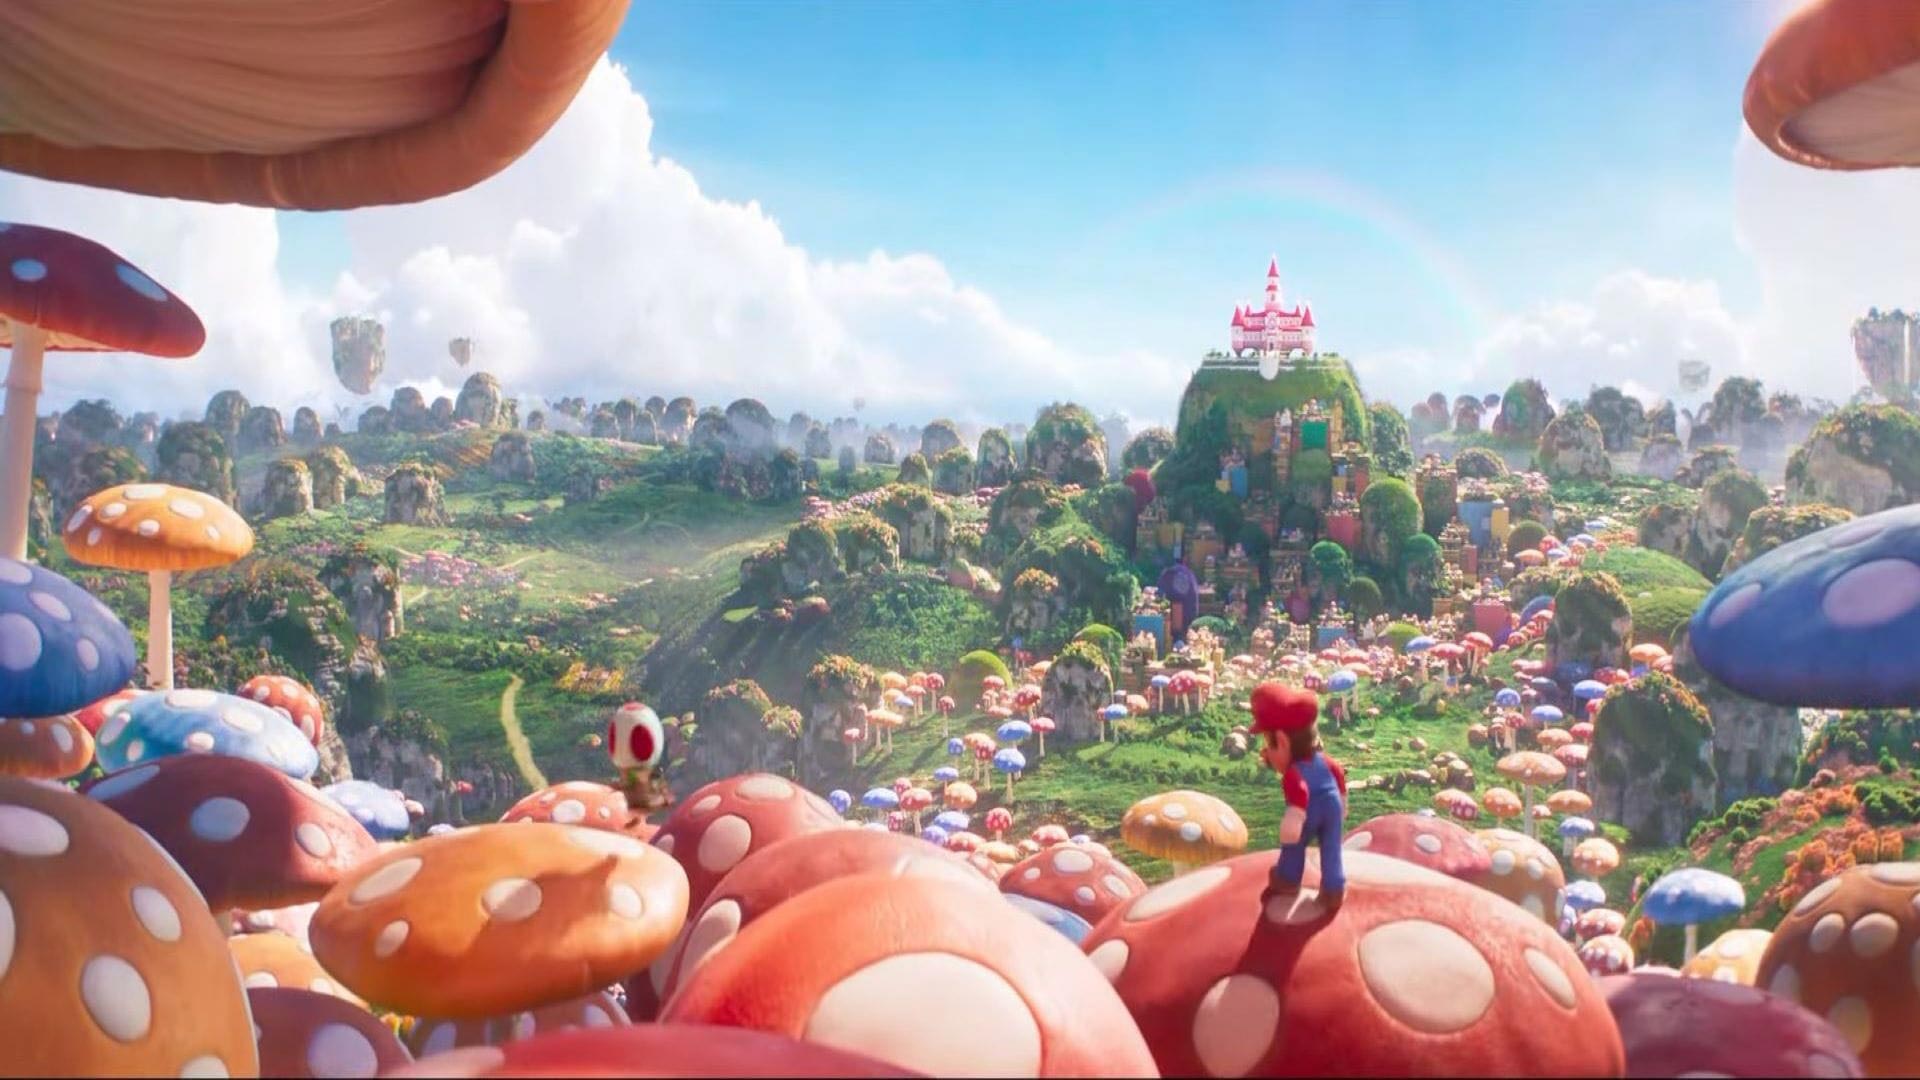 ماریو درحال جابجا شدن روی قارچهای بزرگ